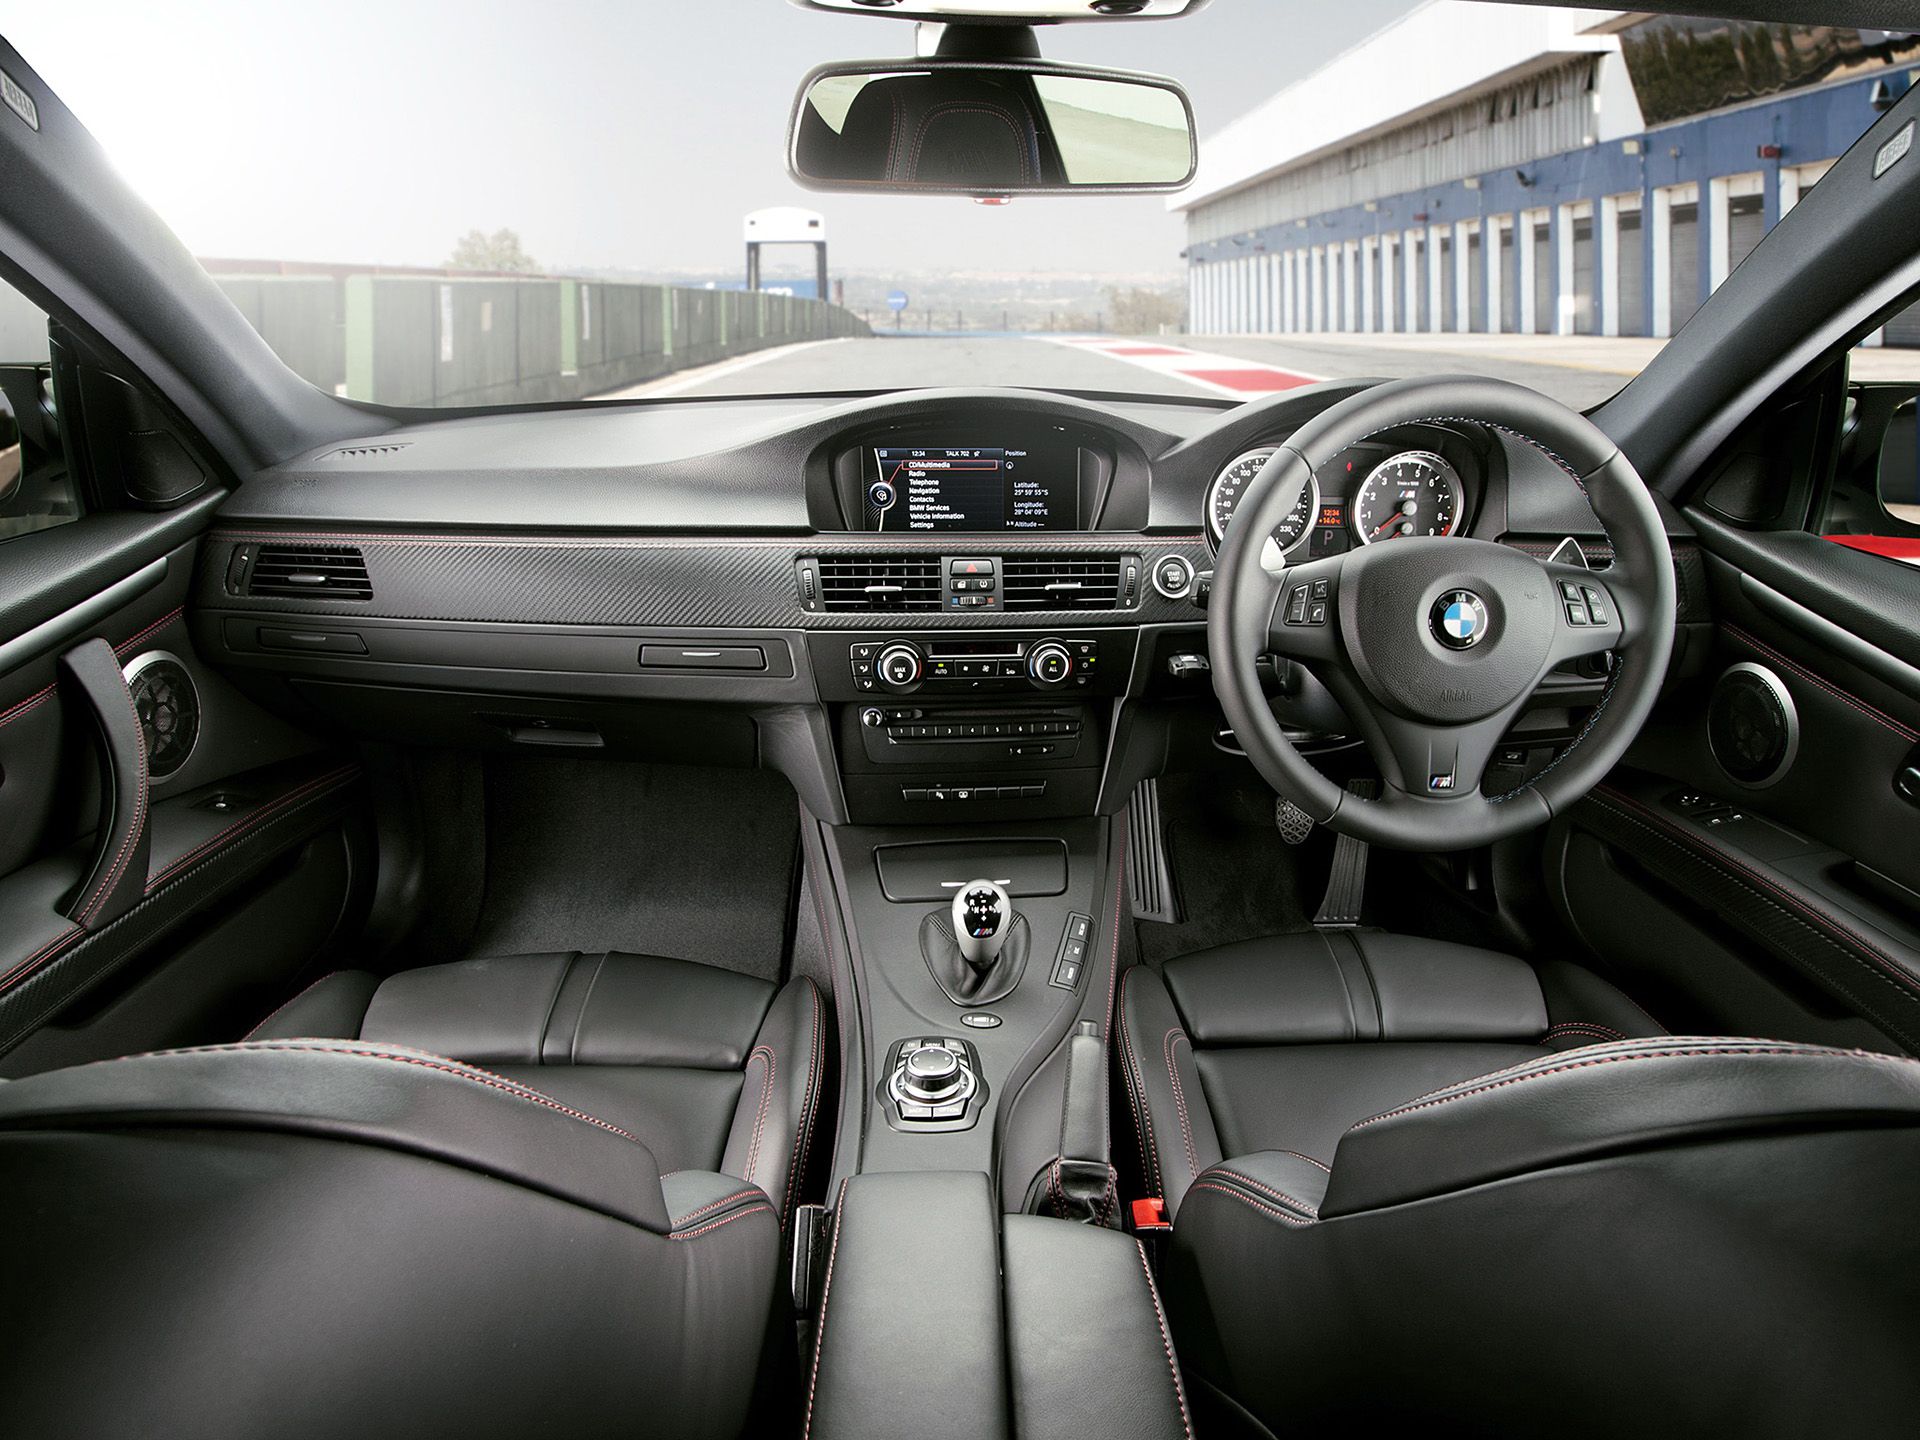 2013-BMW-M3-Frozen-Edition-006-1440